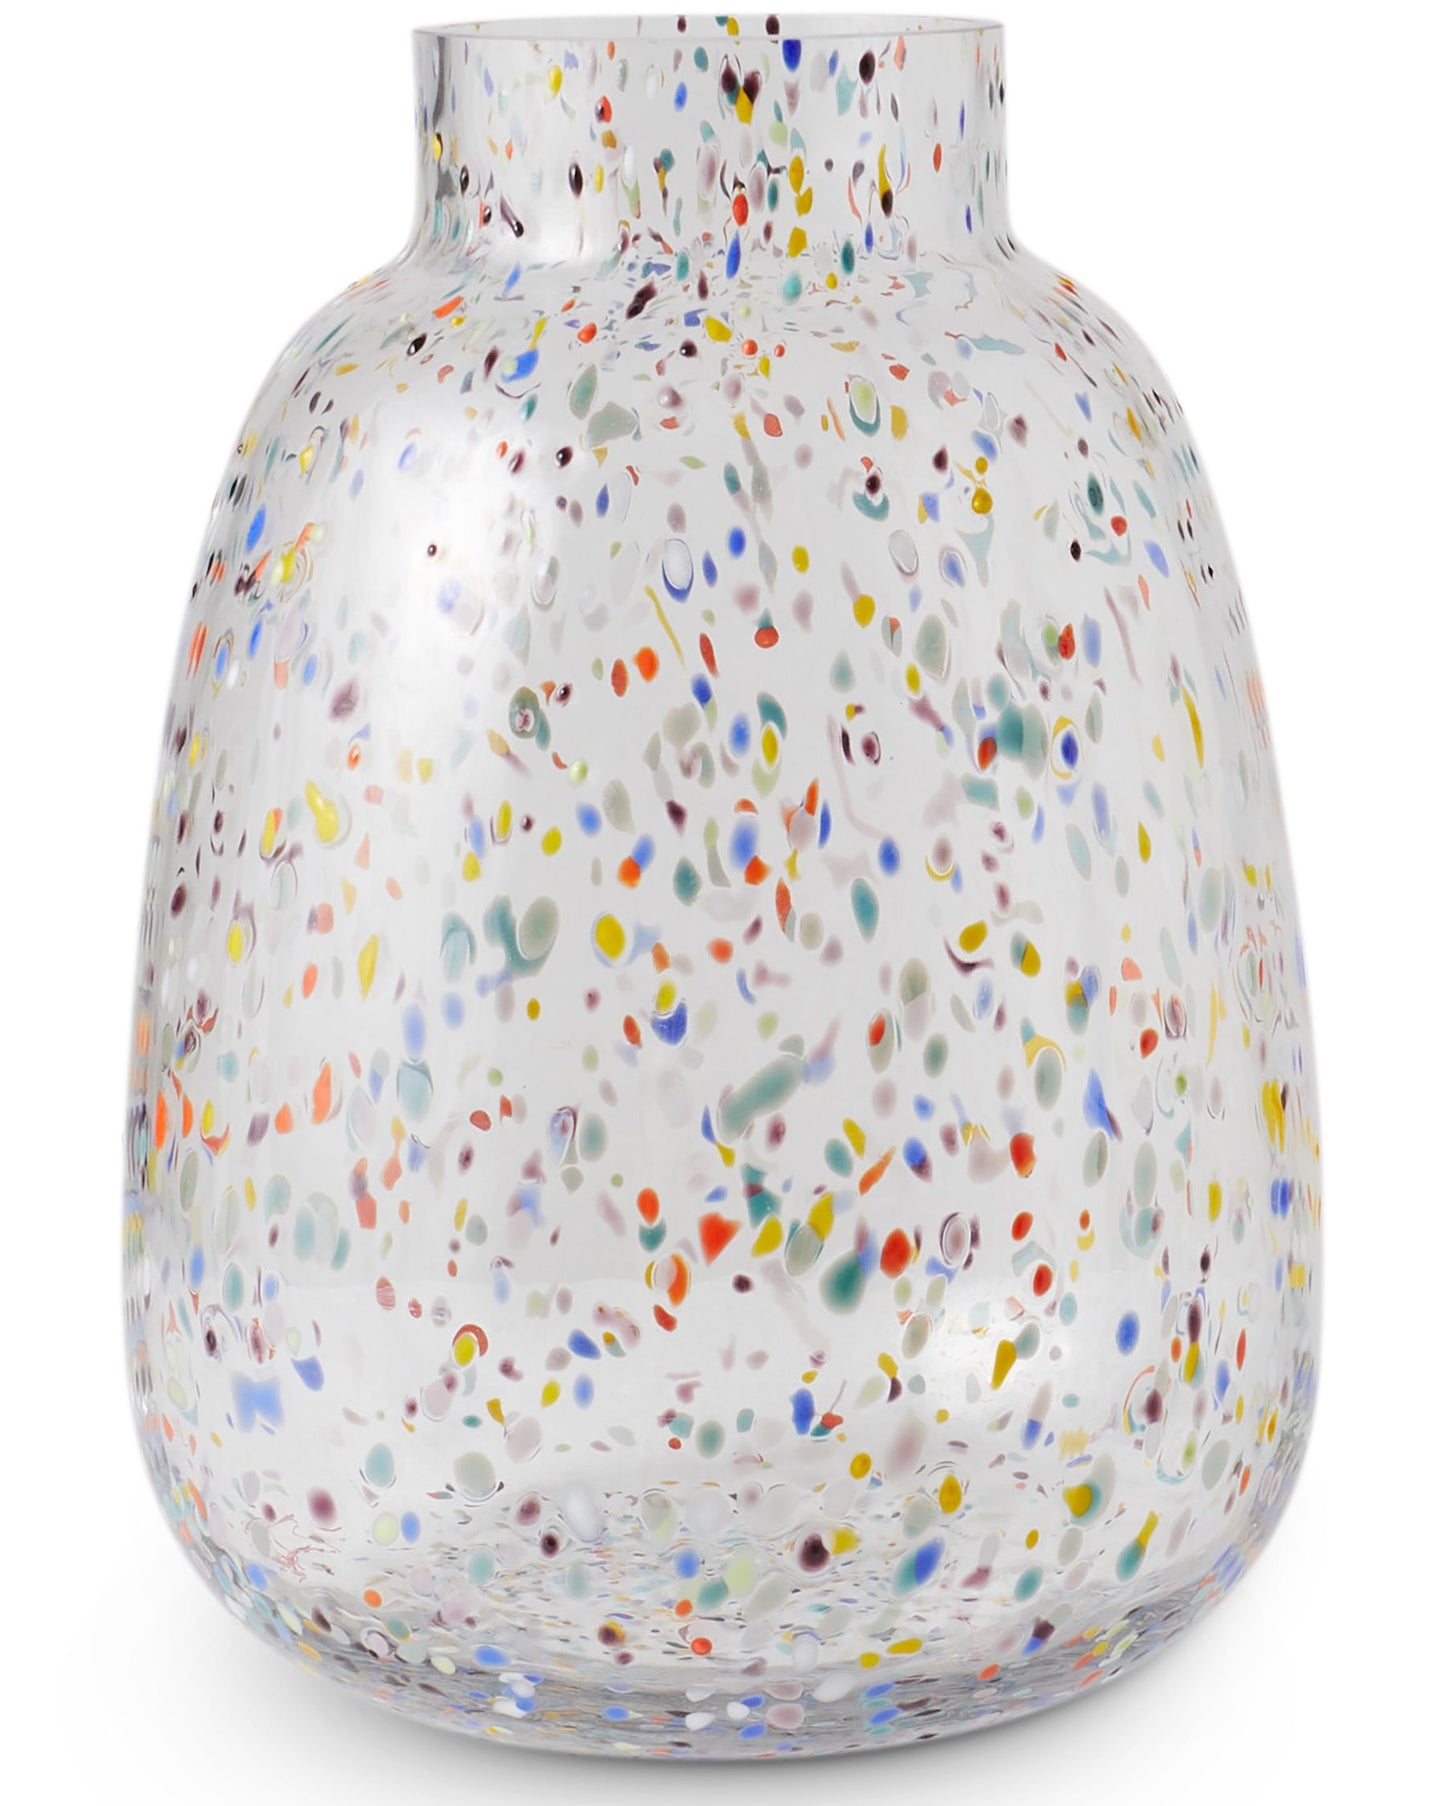 Kip & Co Speckle Vase